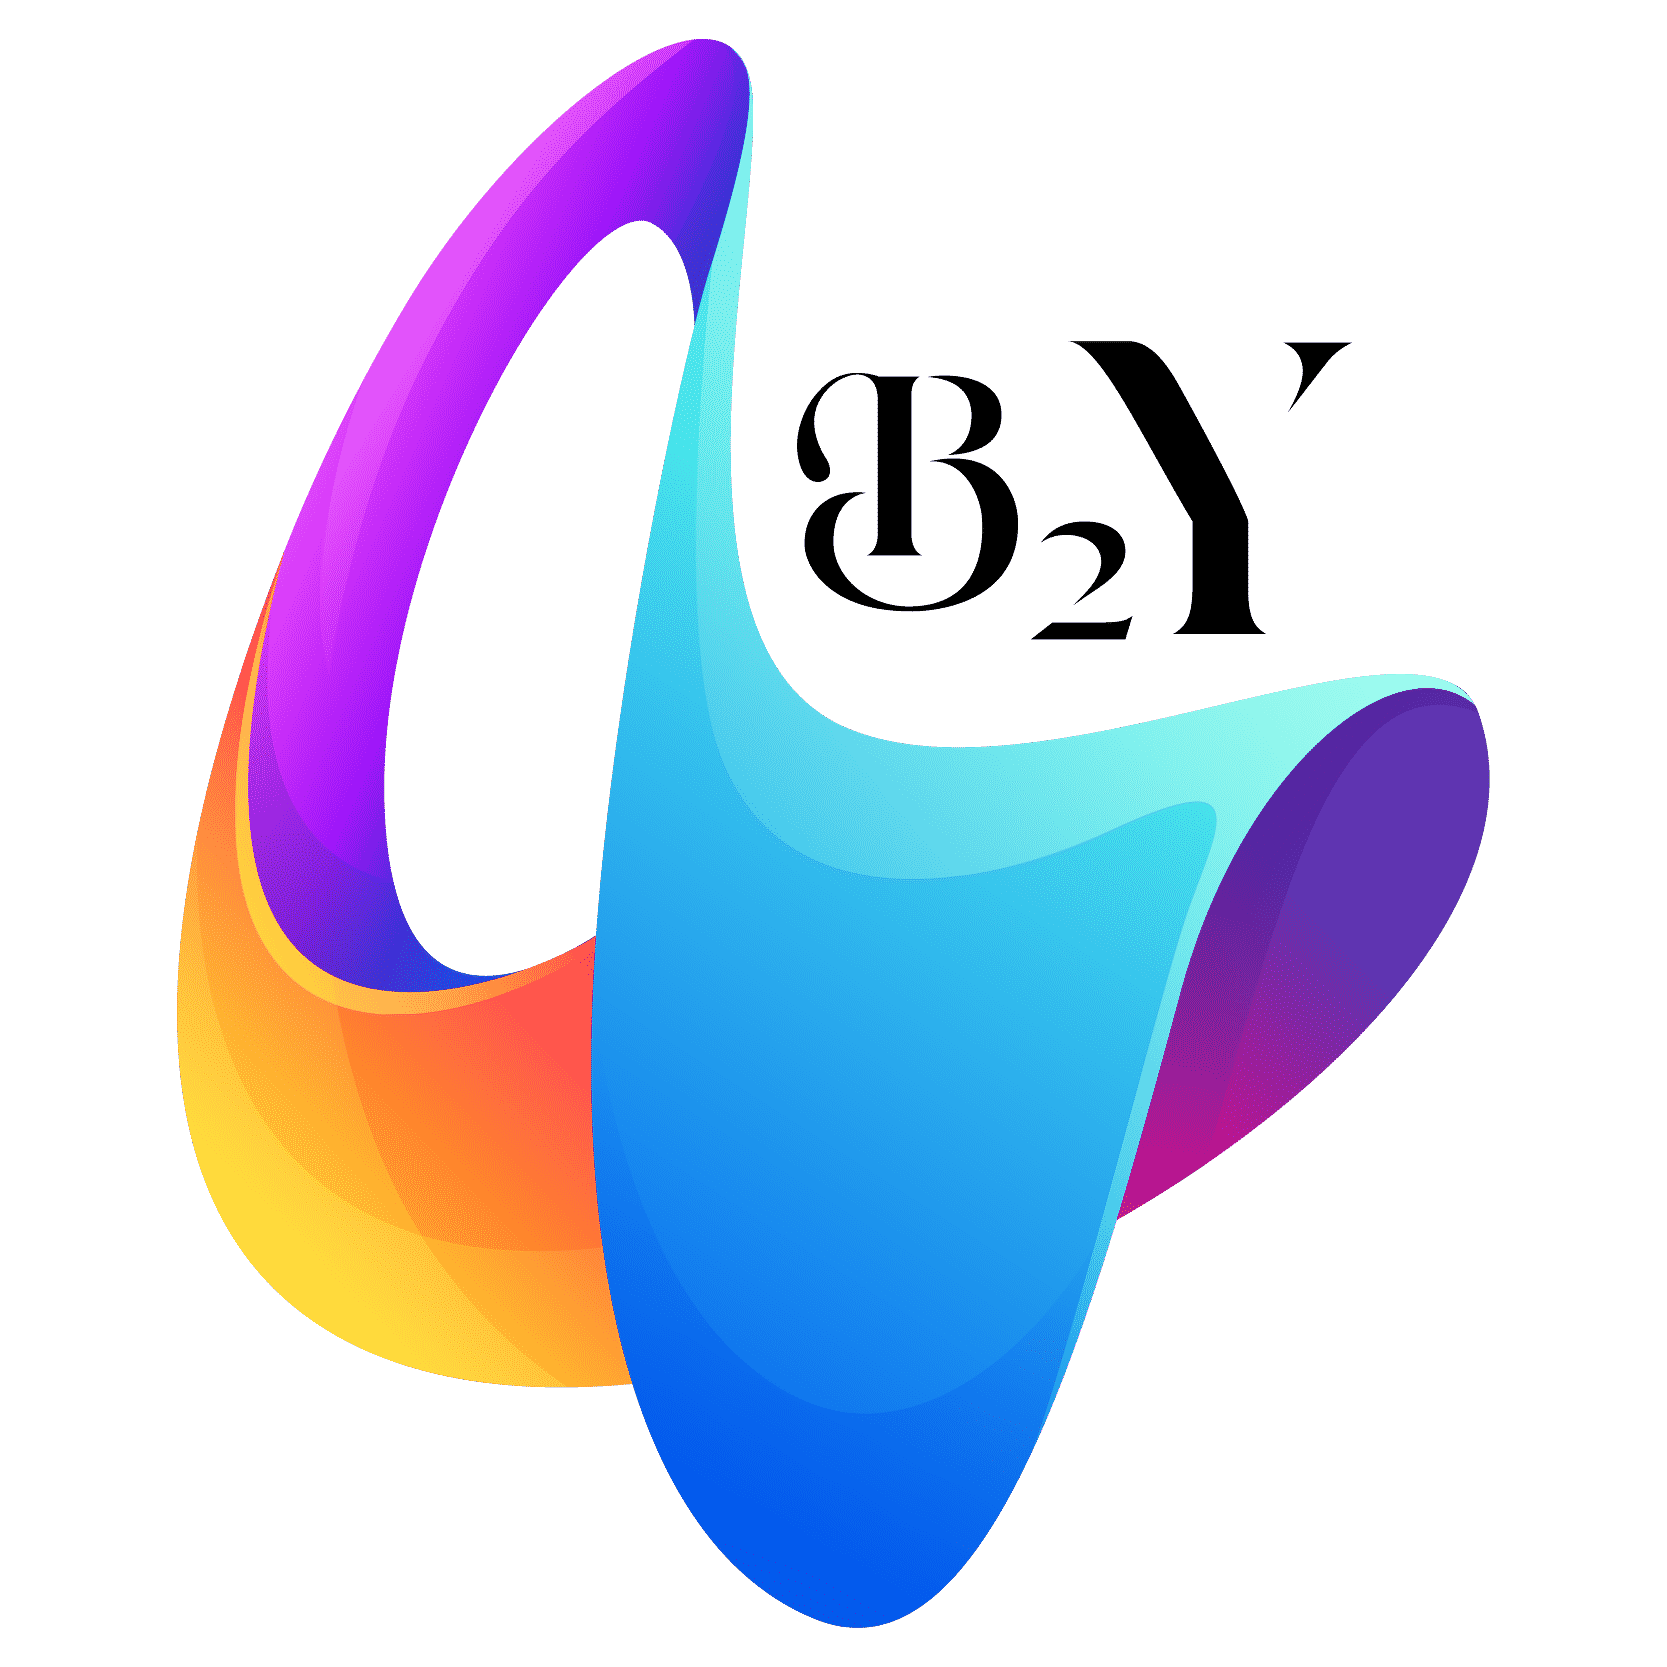 b2yslot_Logo-01